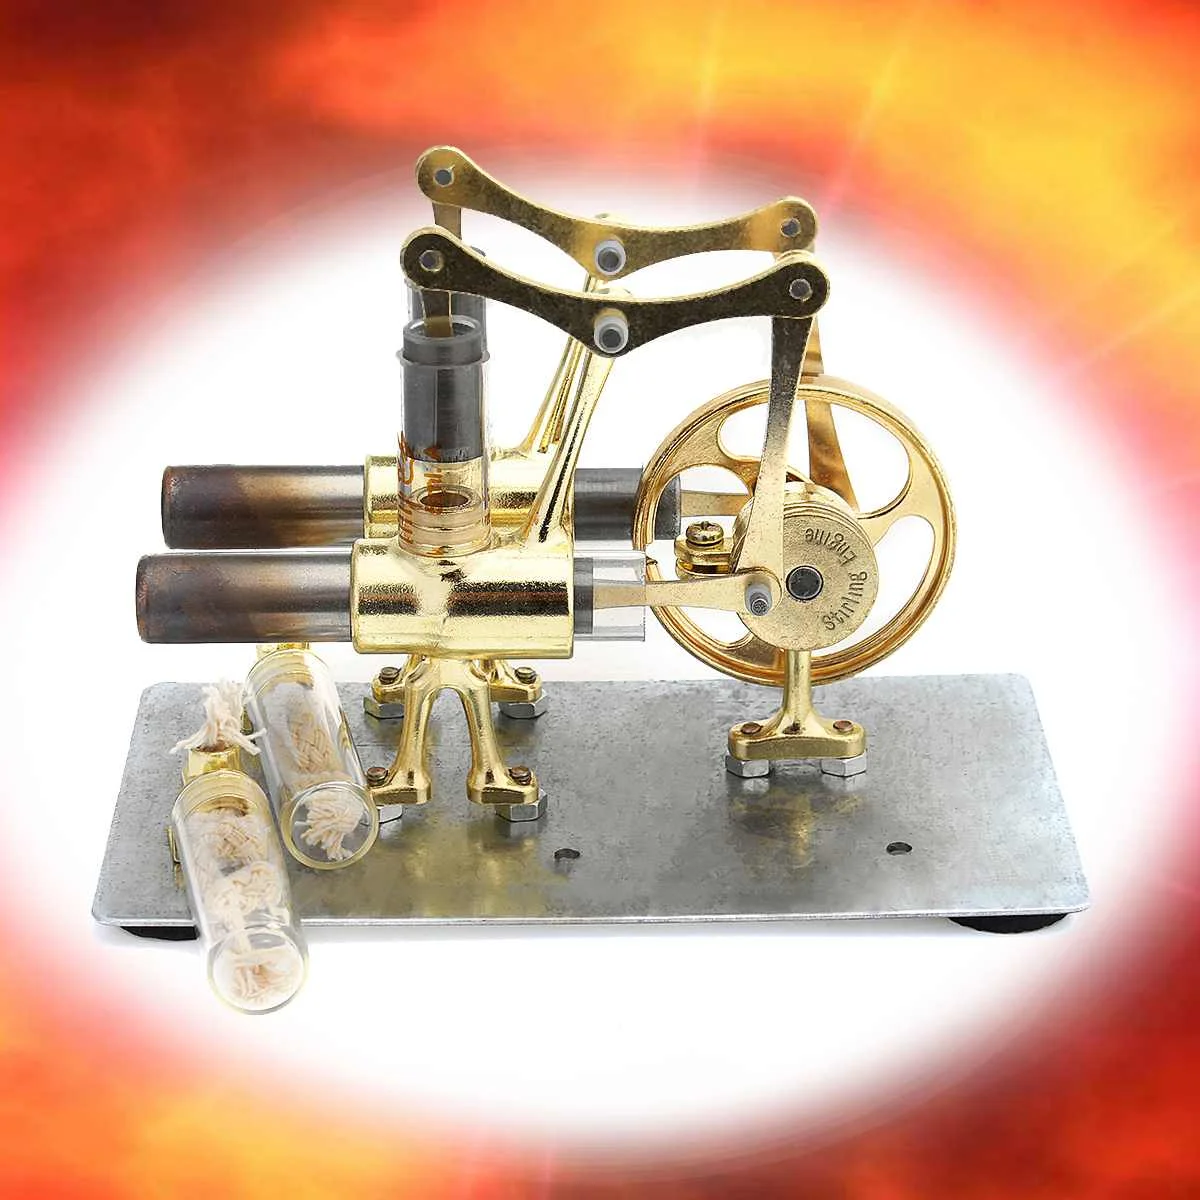 Stirling двигатели для автомобиля наука Набор для экспериментов набор детей подарок коллекция